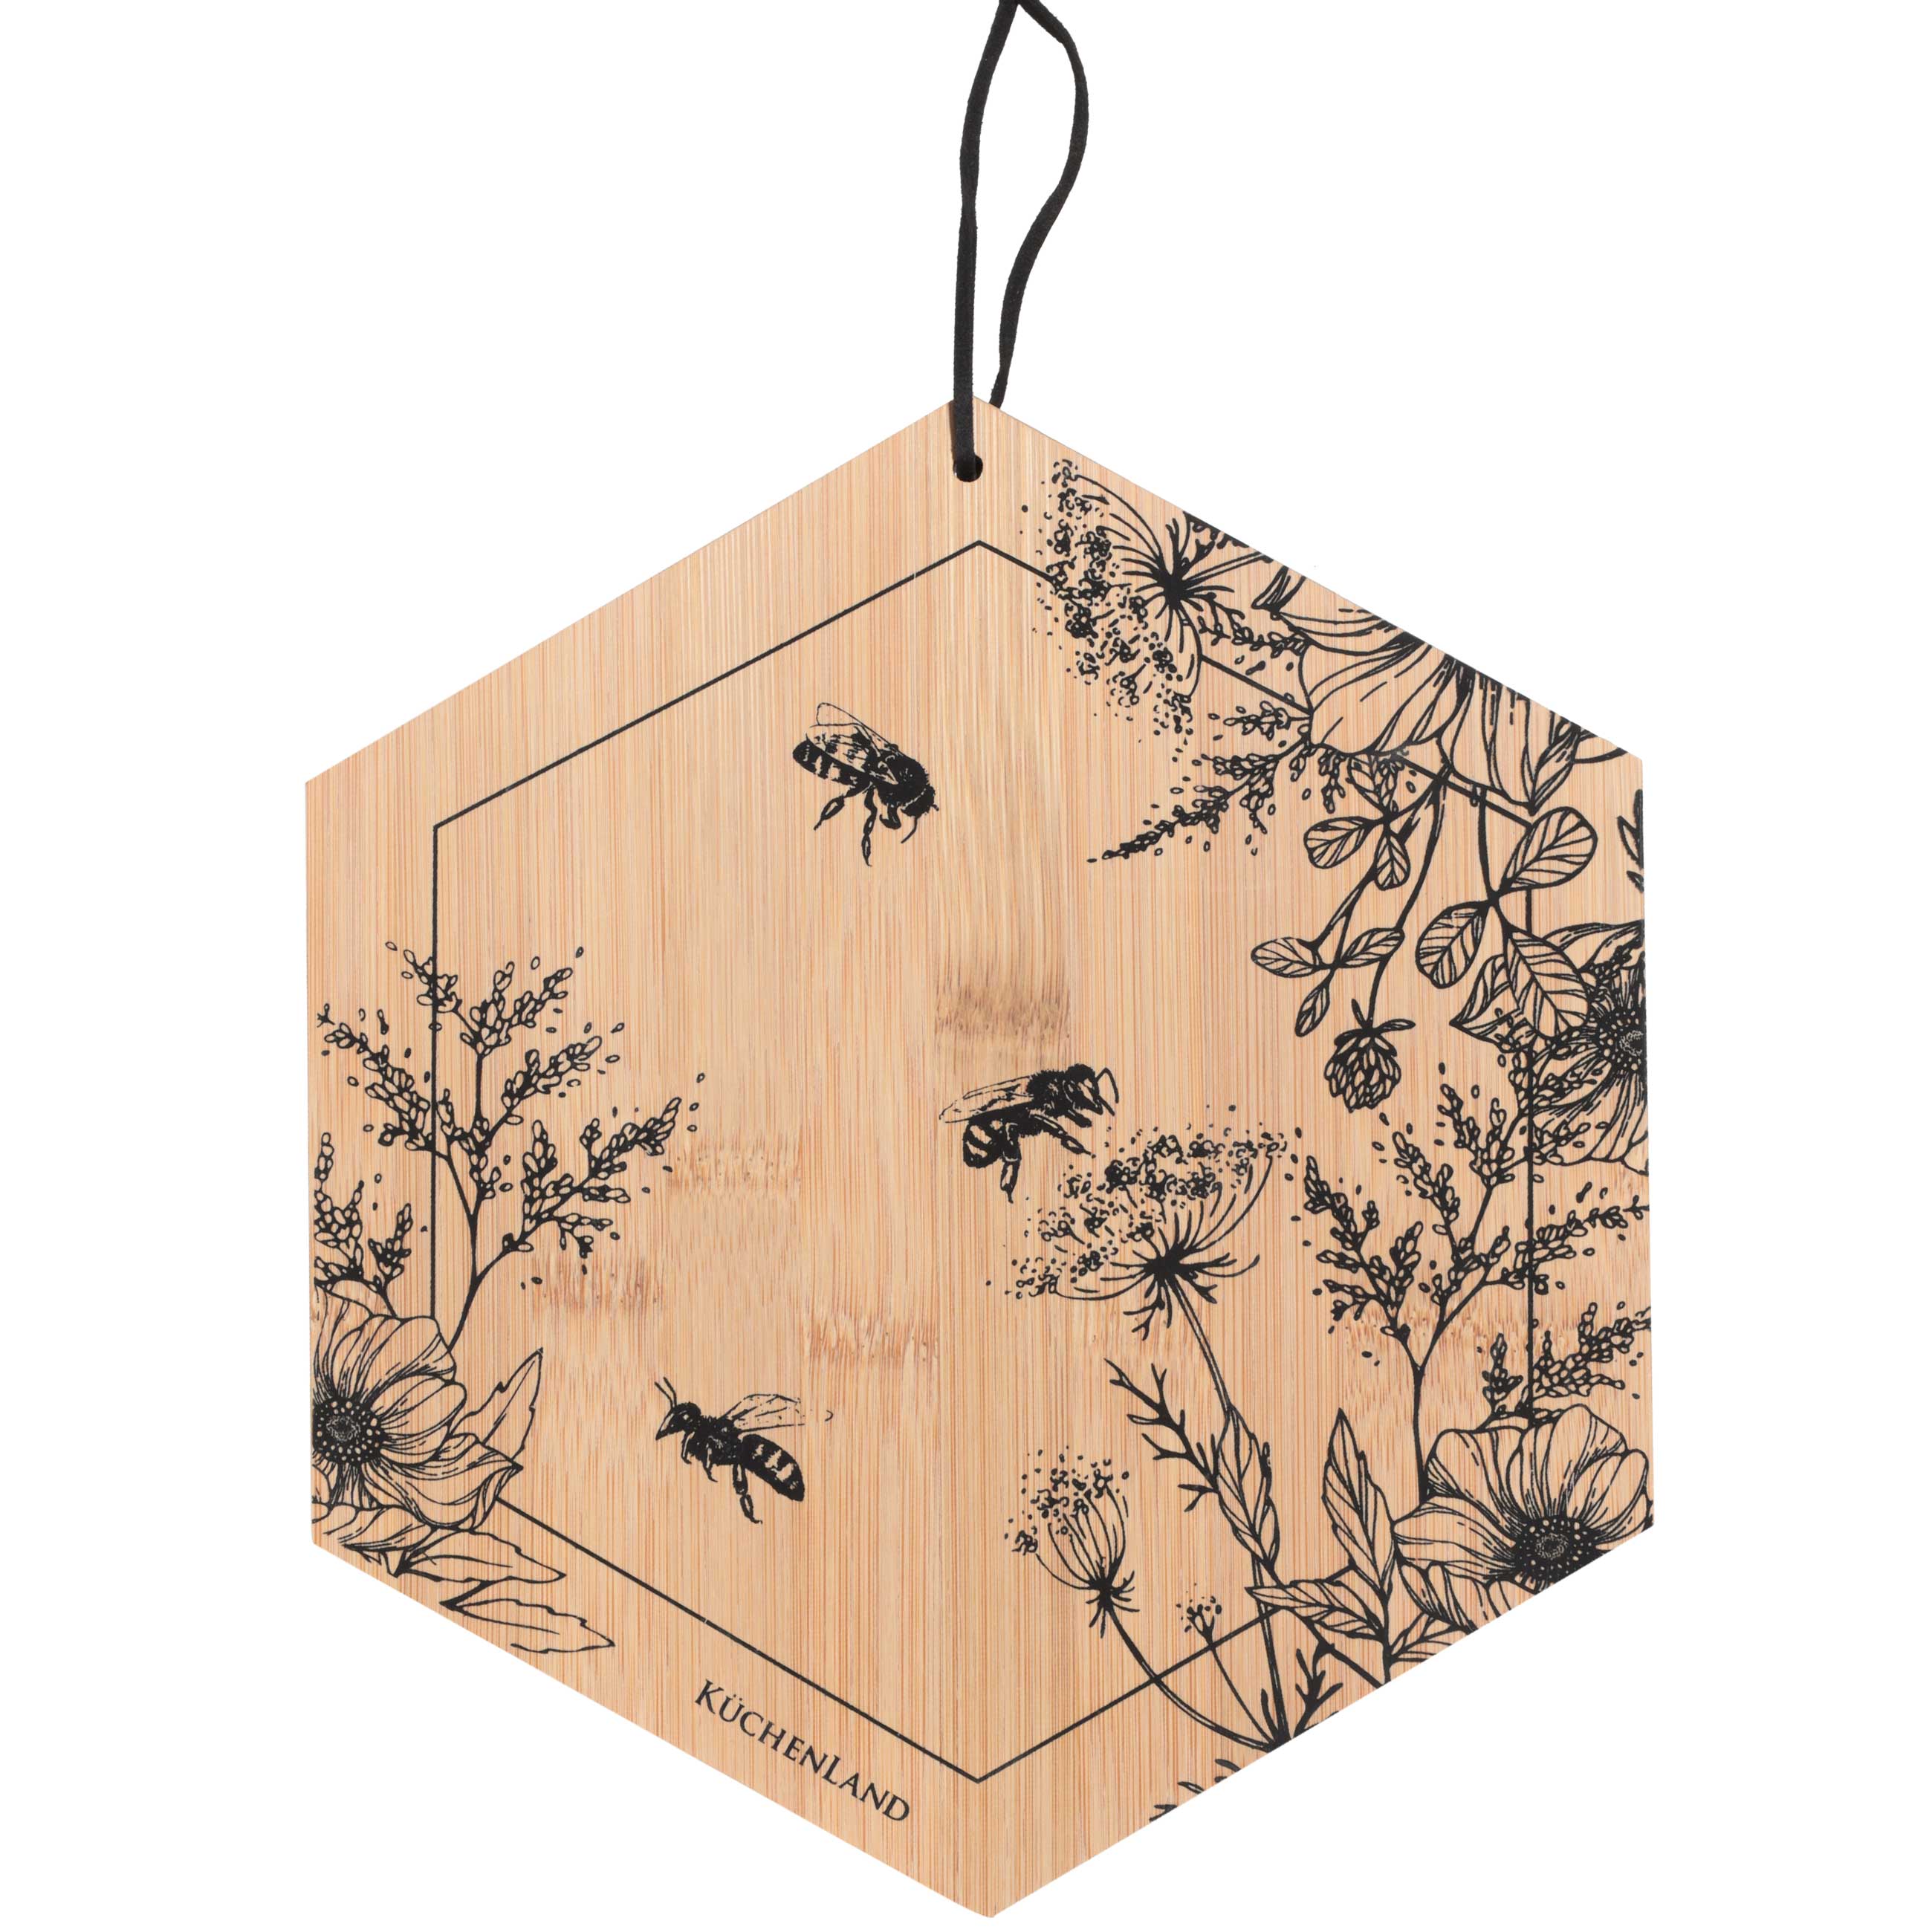 Доска разделочная Kuchenland 25x22 см, бамбук, шестиугольная, Пчелы, Honey